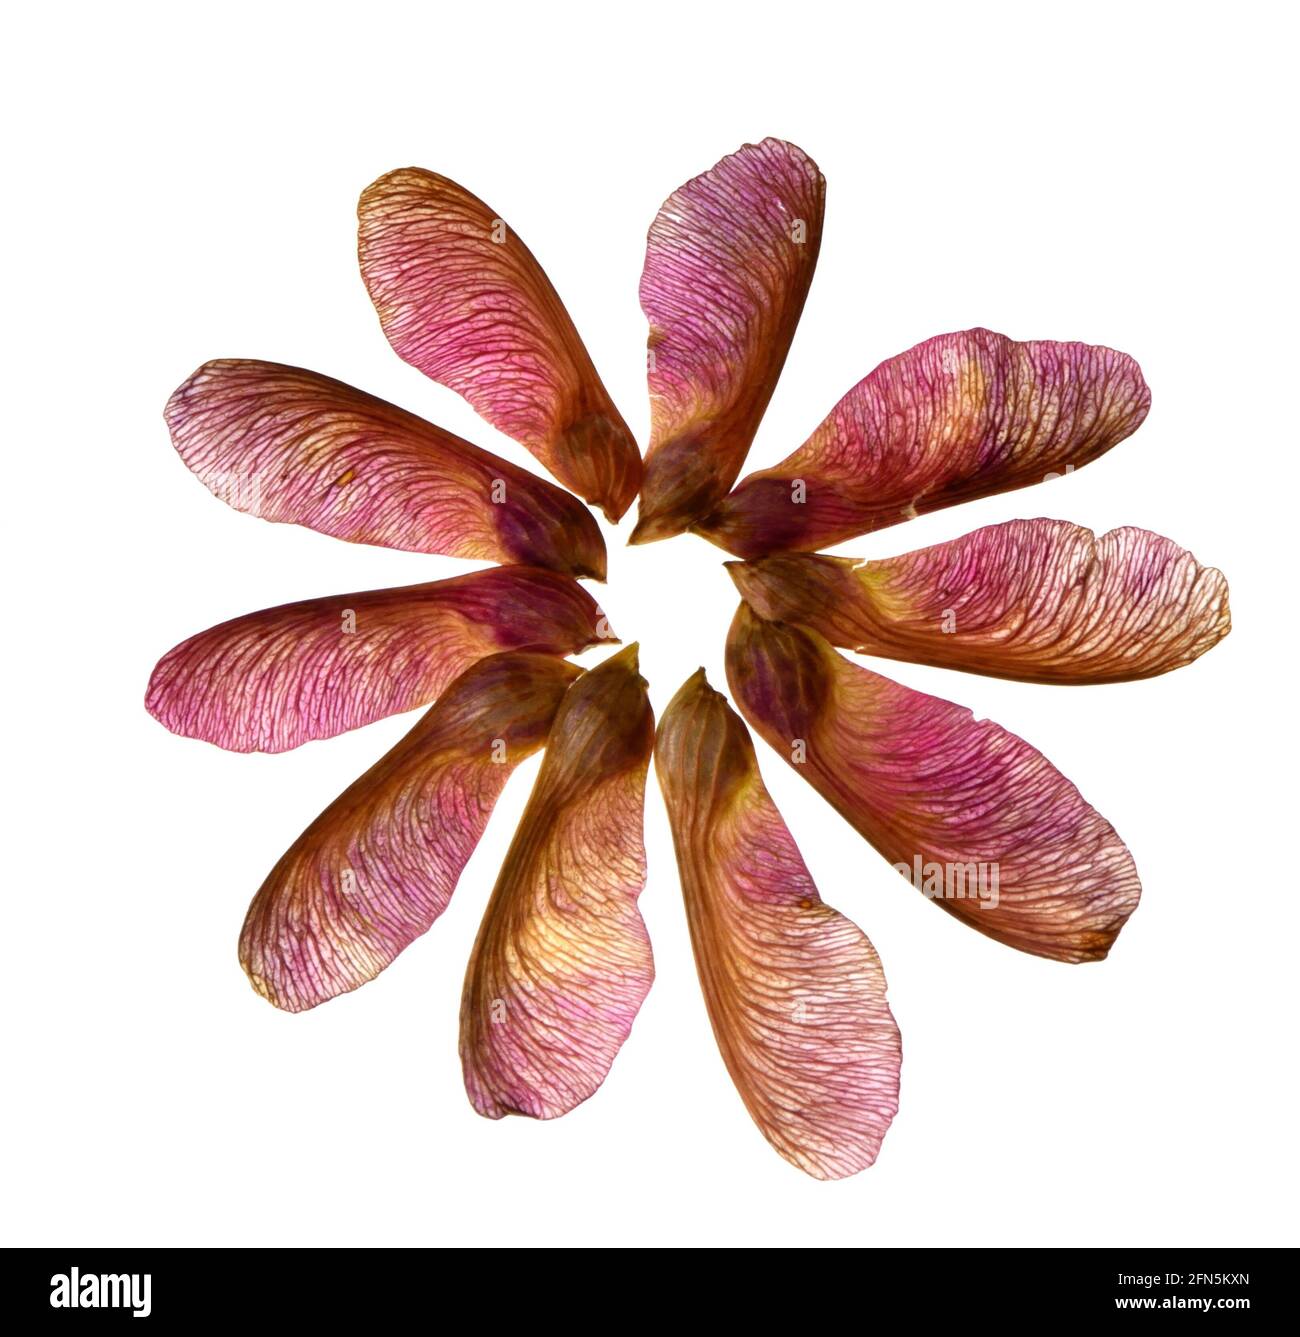 Un primo piano di dieci baccelli di semi d'acero disposti in un cerchio per formare una forma di fiore con ogni baccello di semi che serve come petalo del fiore. Foto Stock